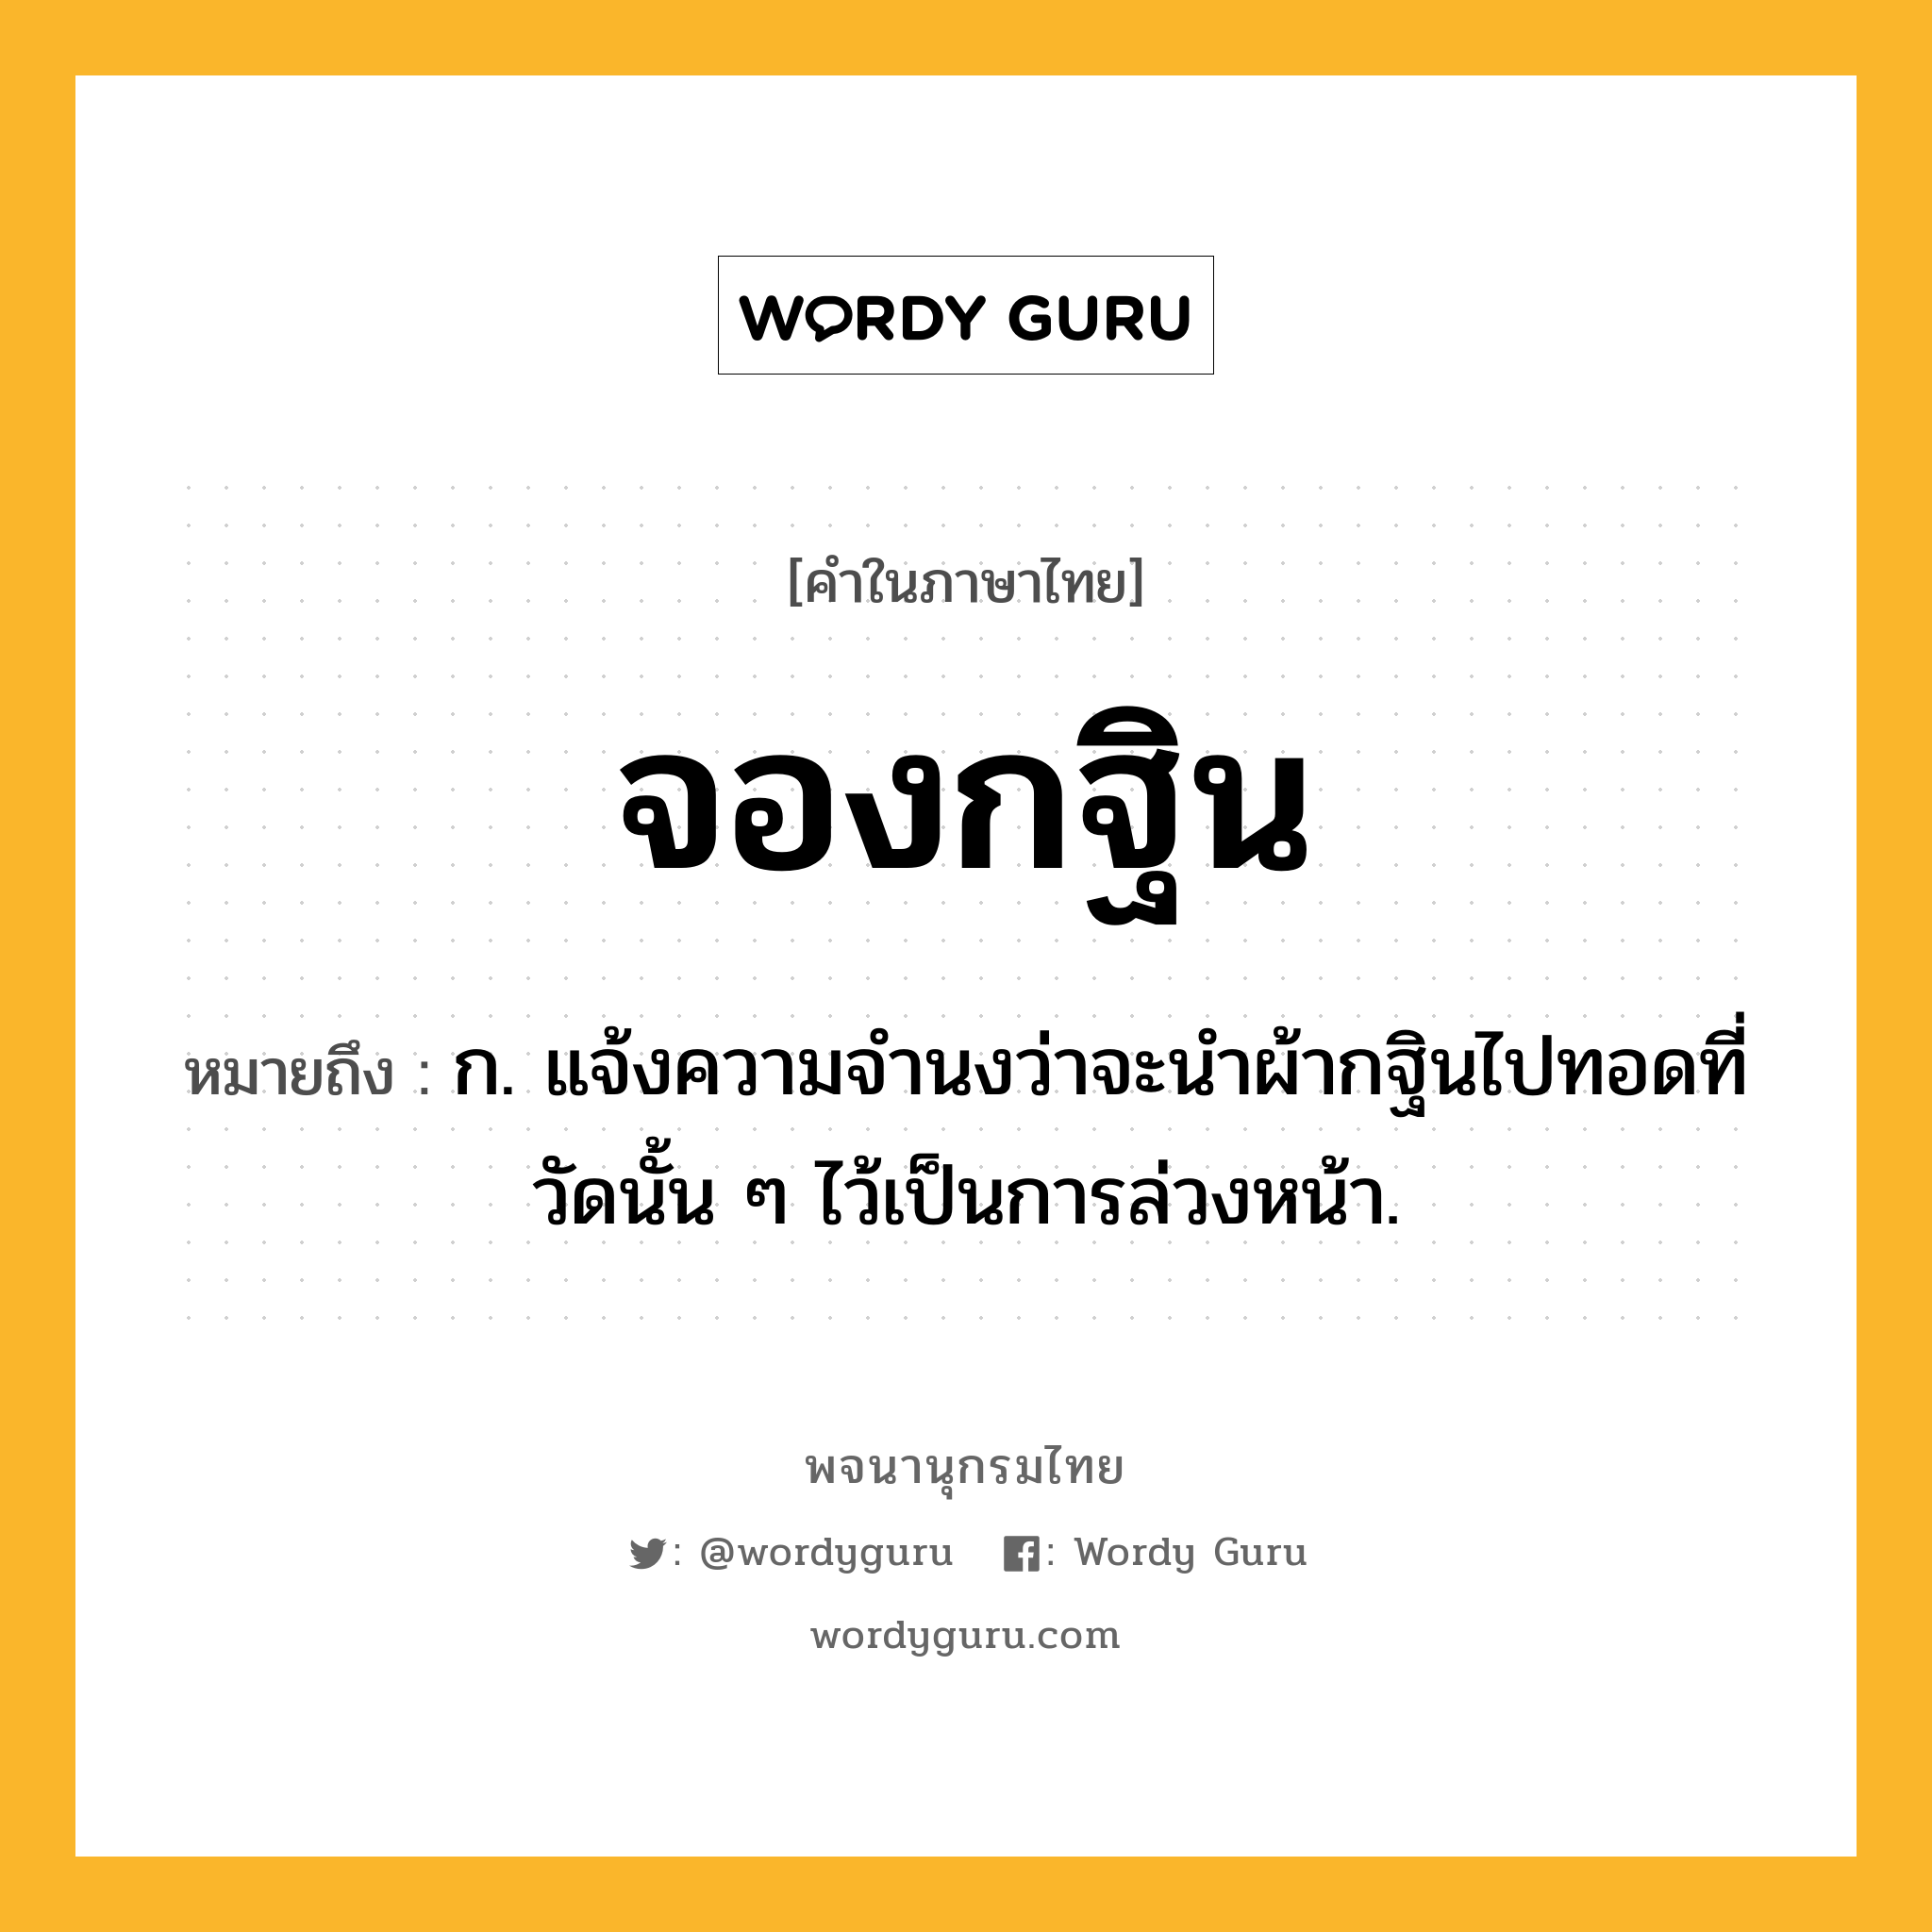 จองกฐิน ความหมาย หมายถึงอะไร?, คำในภาษาไทย จองกฐิน หมายถึง ก. แจ้งความจำนงว่าจะนำผ้ากฐินไปทอดที่วัดนั้น ๆ ไว้เป็นการล่วงหน้า.